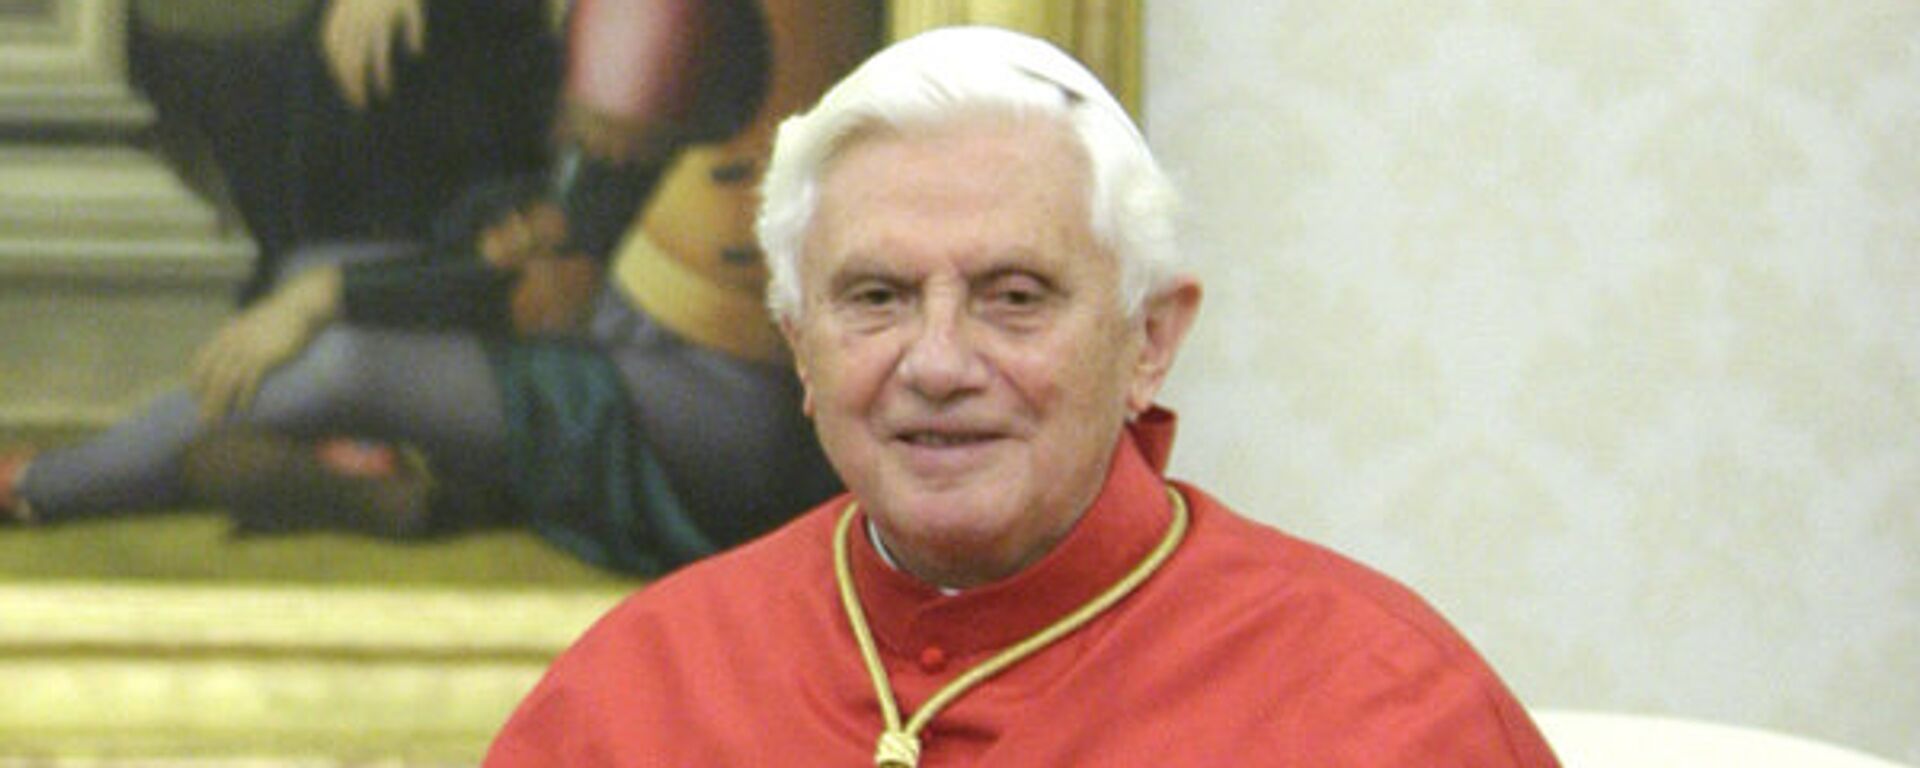 El papa emérito Benedicto XVI - Sputnik Mundo, 1920, 31.12.2022